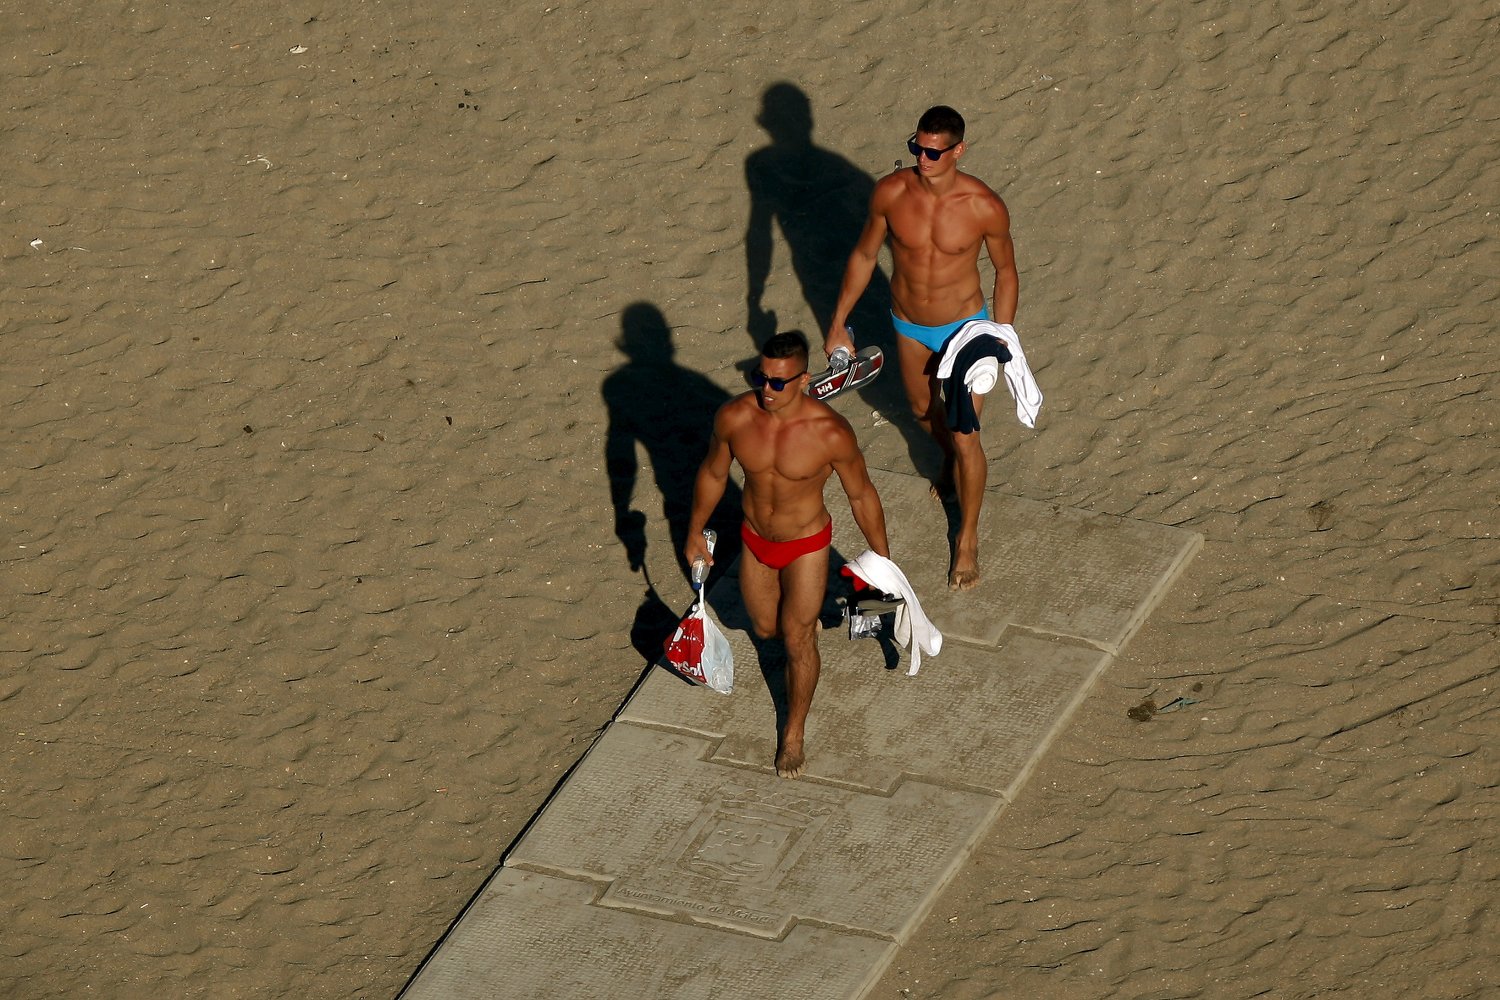 Si vas a Cádiz ten cuidado donde practicas nudismo